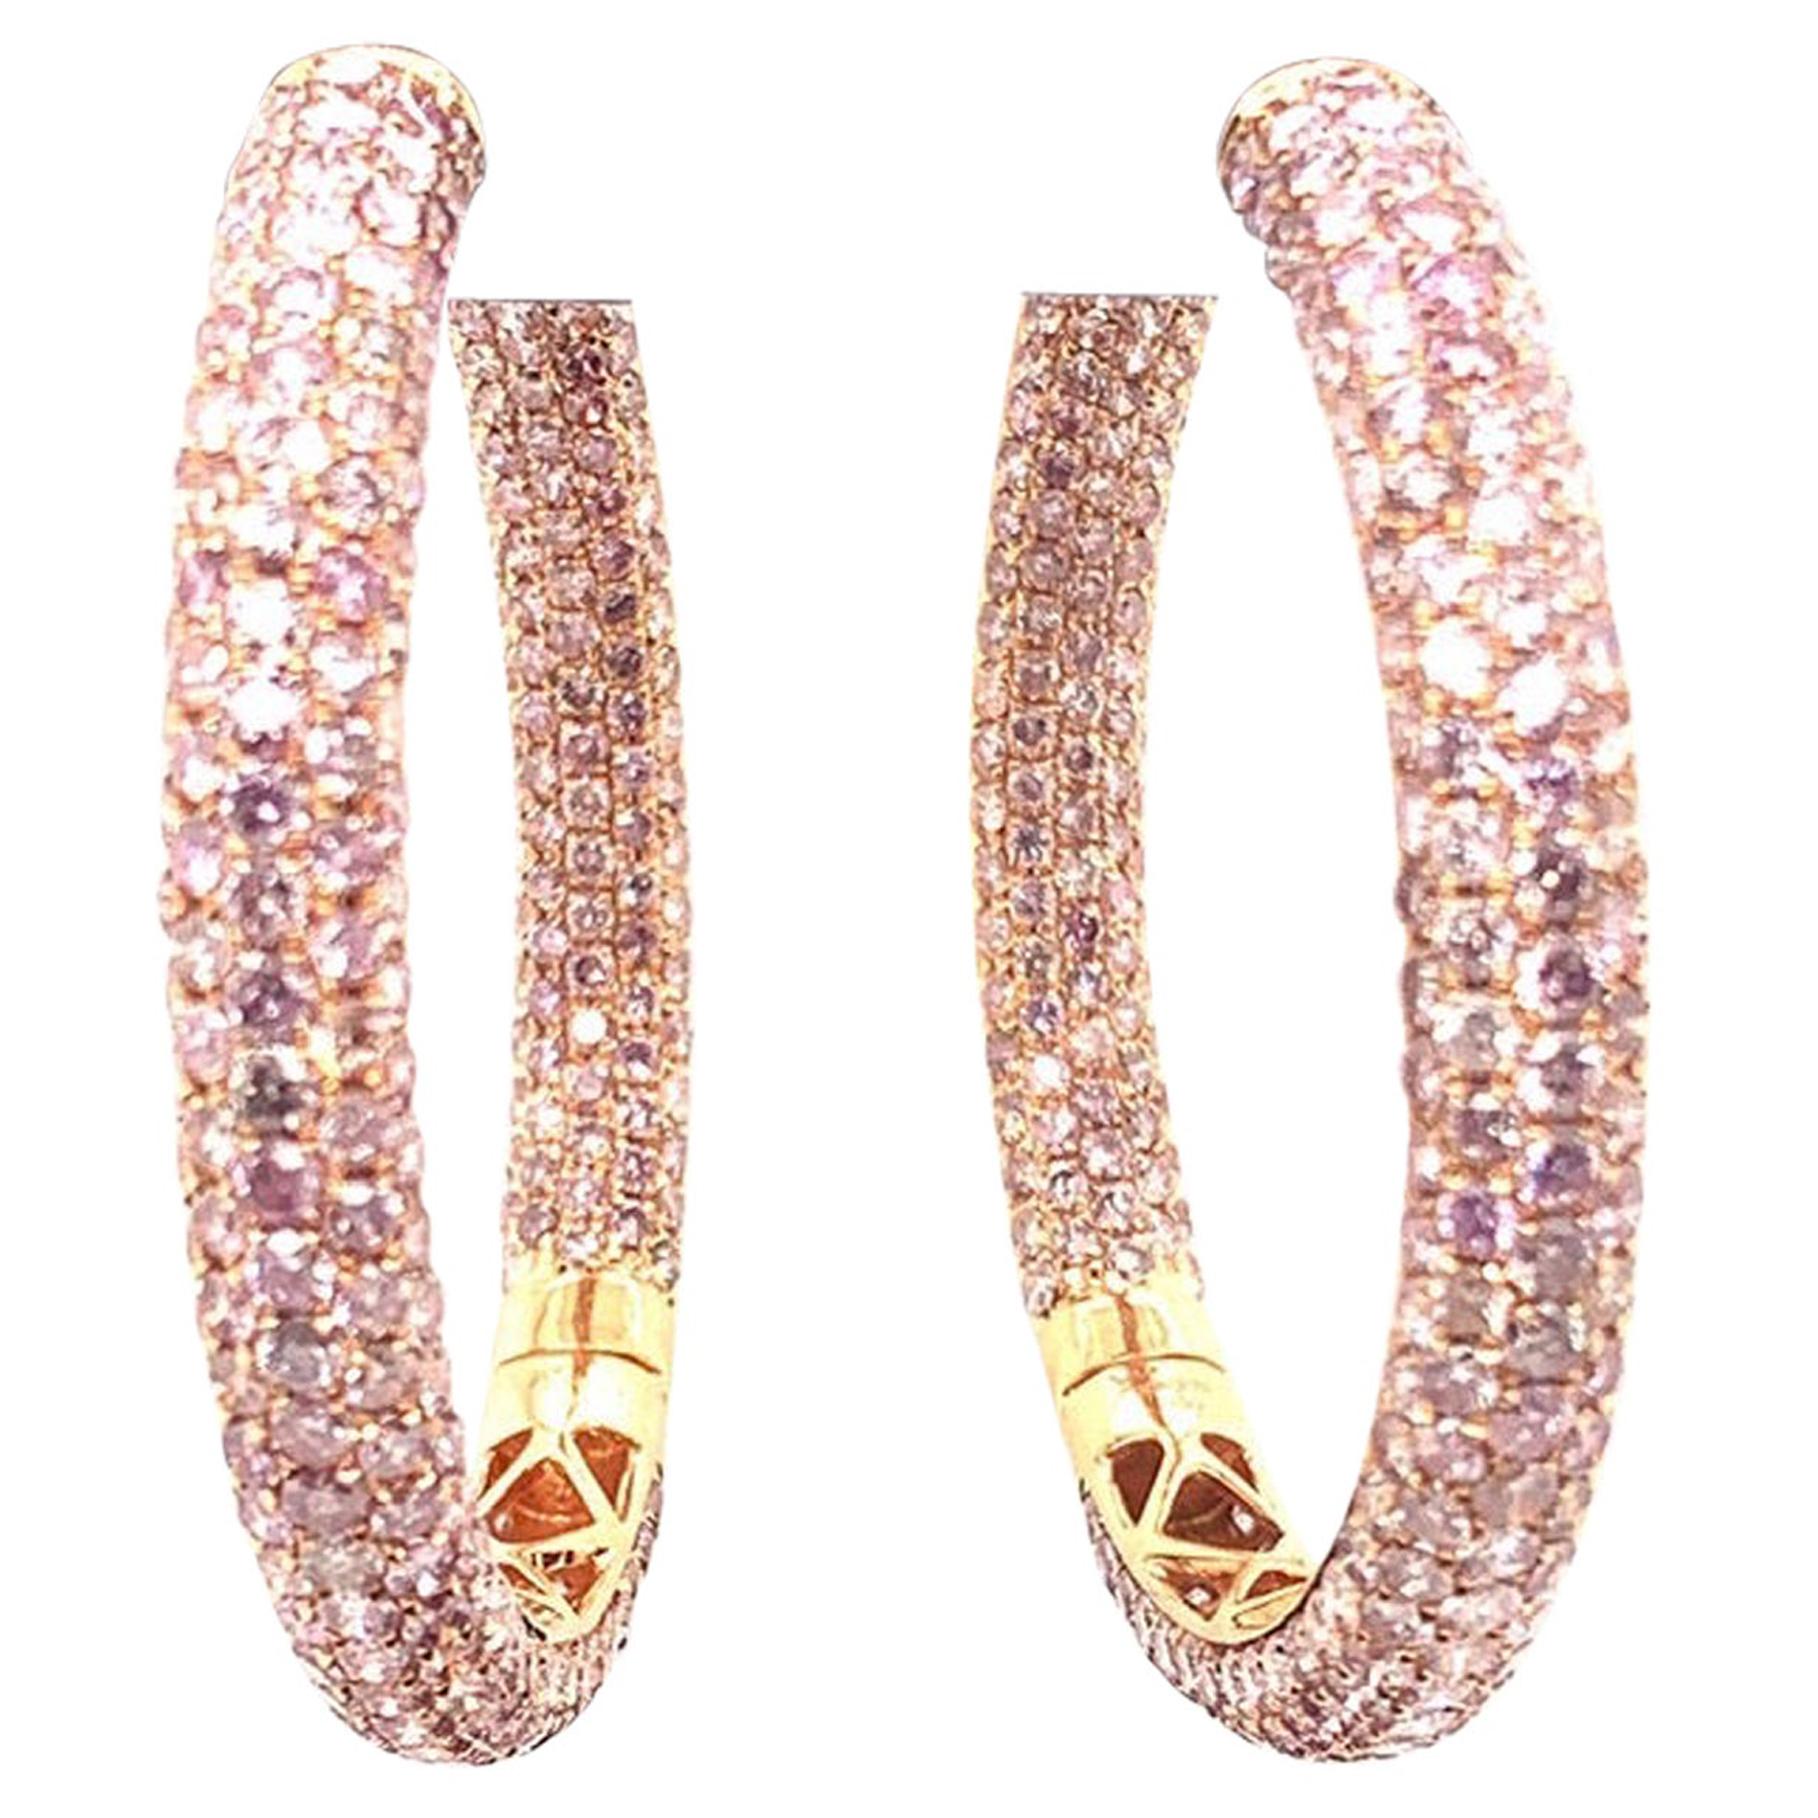 20 Carat Natural Pink Diamond Hoop Earrings